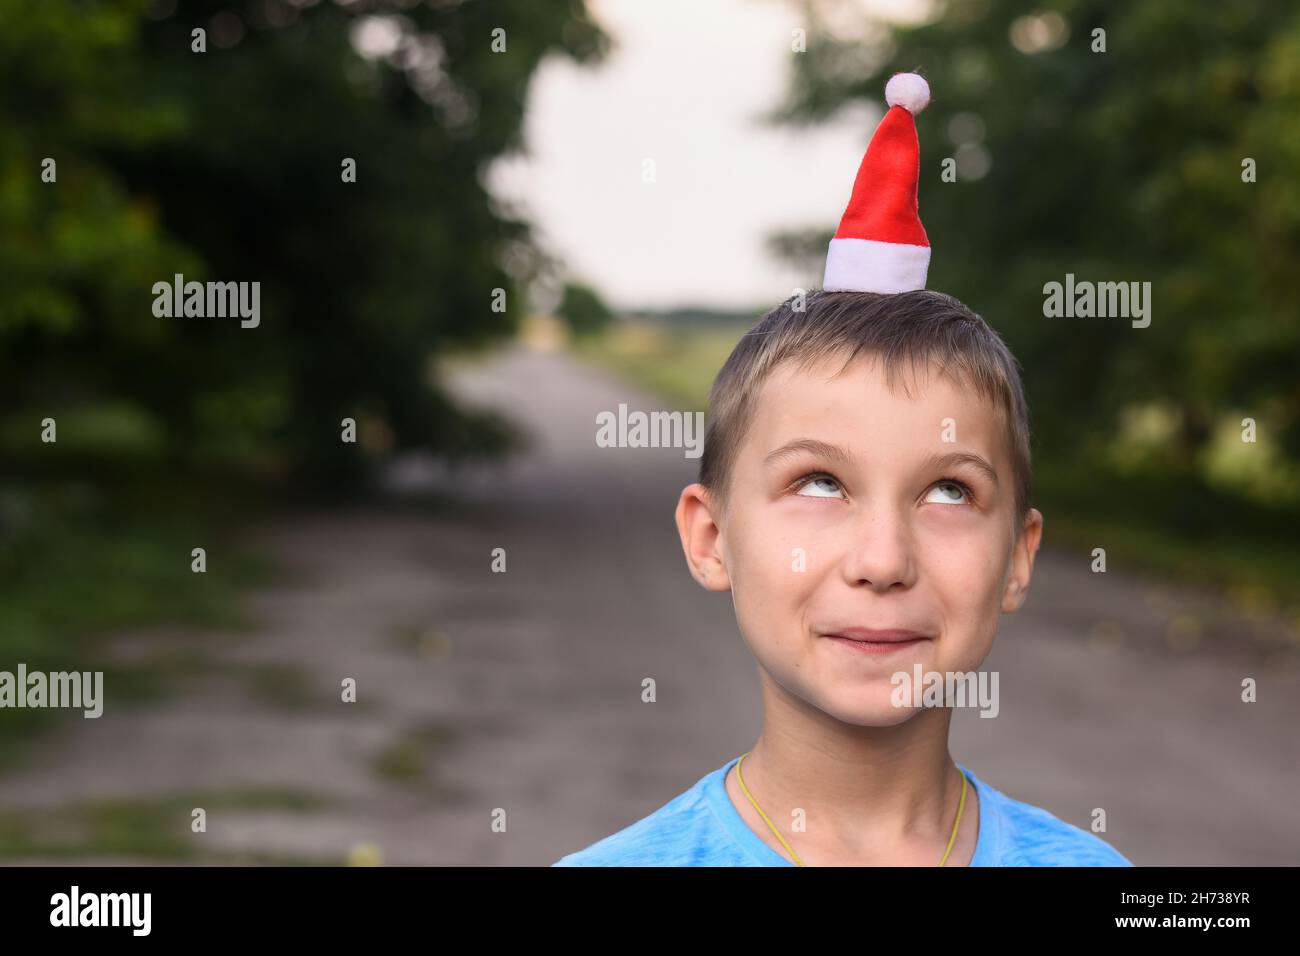 Drôle de garçon a mis un petit chapeau de père Noël sur sa tête. Maquette Banque D'Images